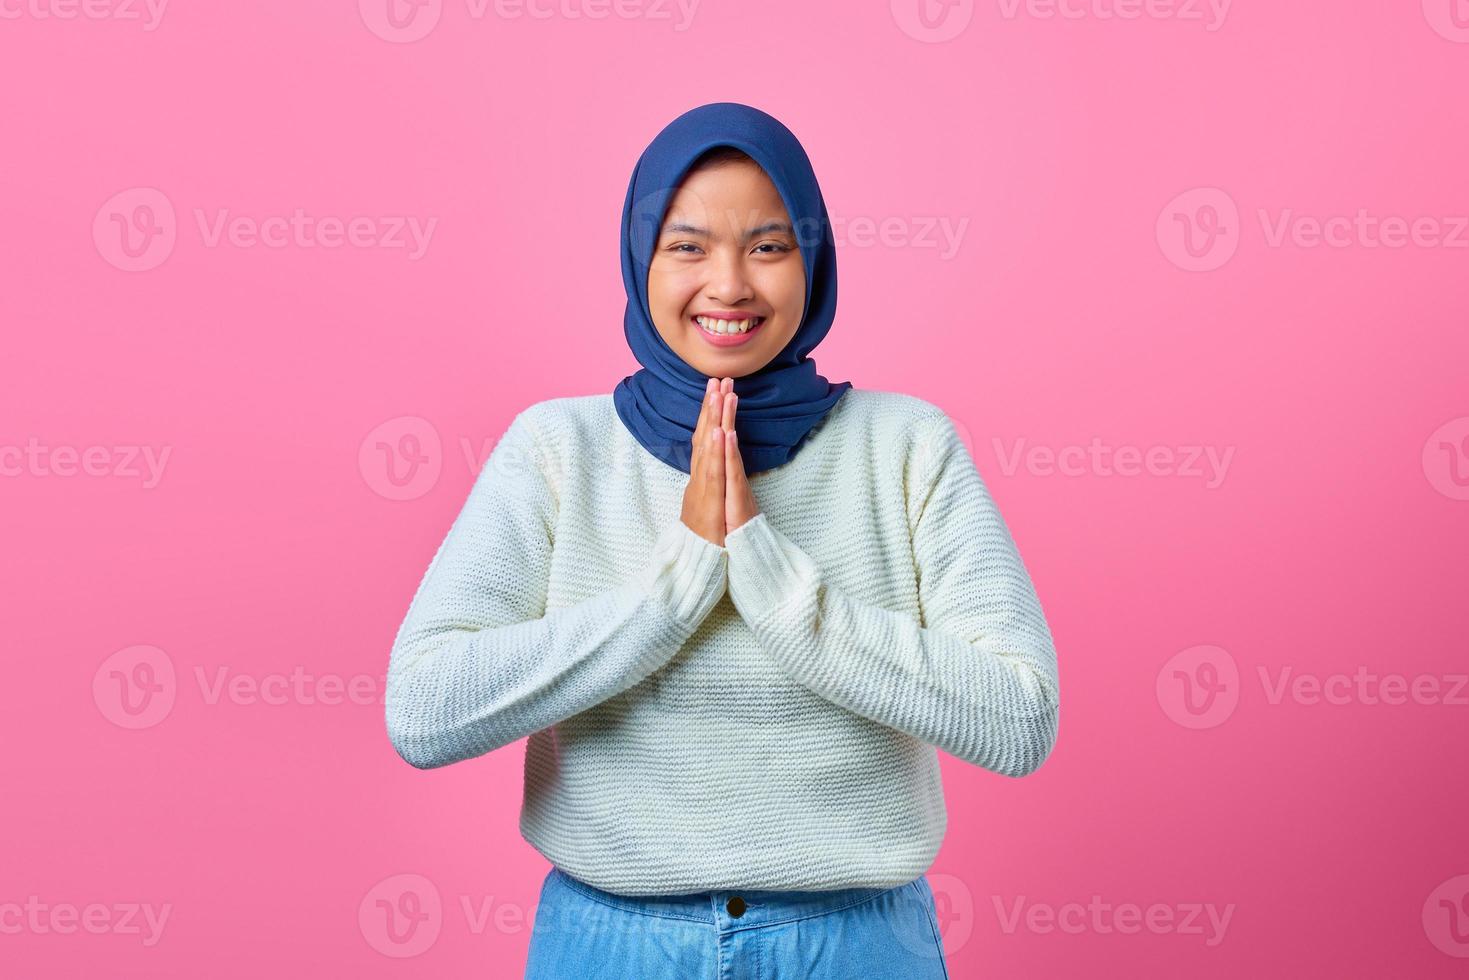 porträtt av leende ung asiatisk kvinna som visar be gest på rosa bakgrund foto